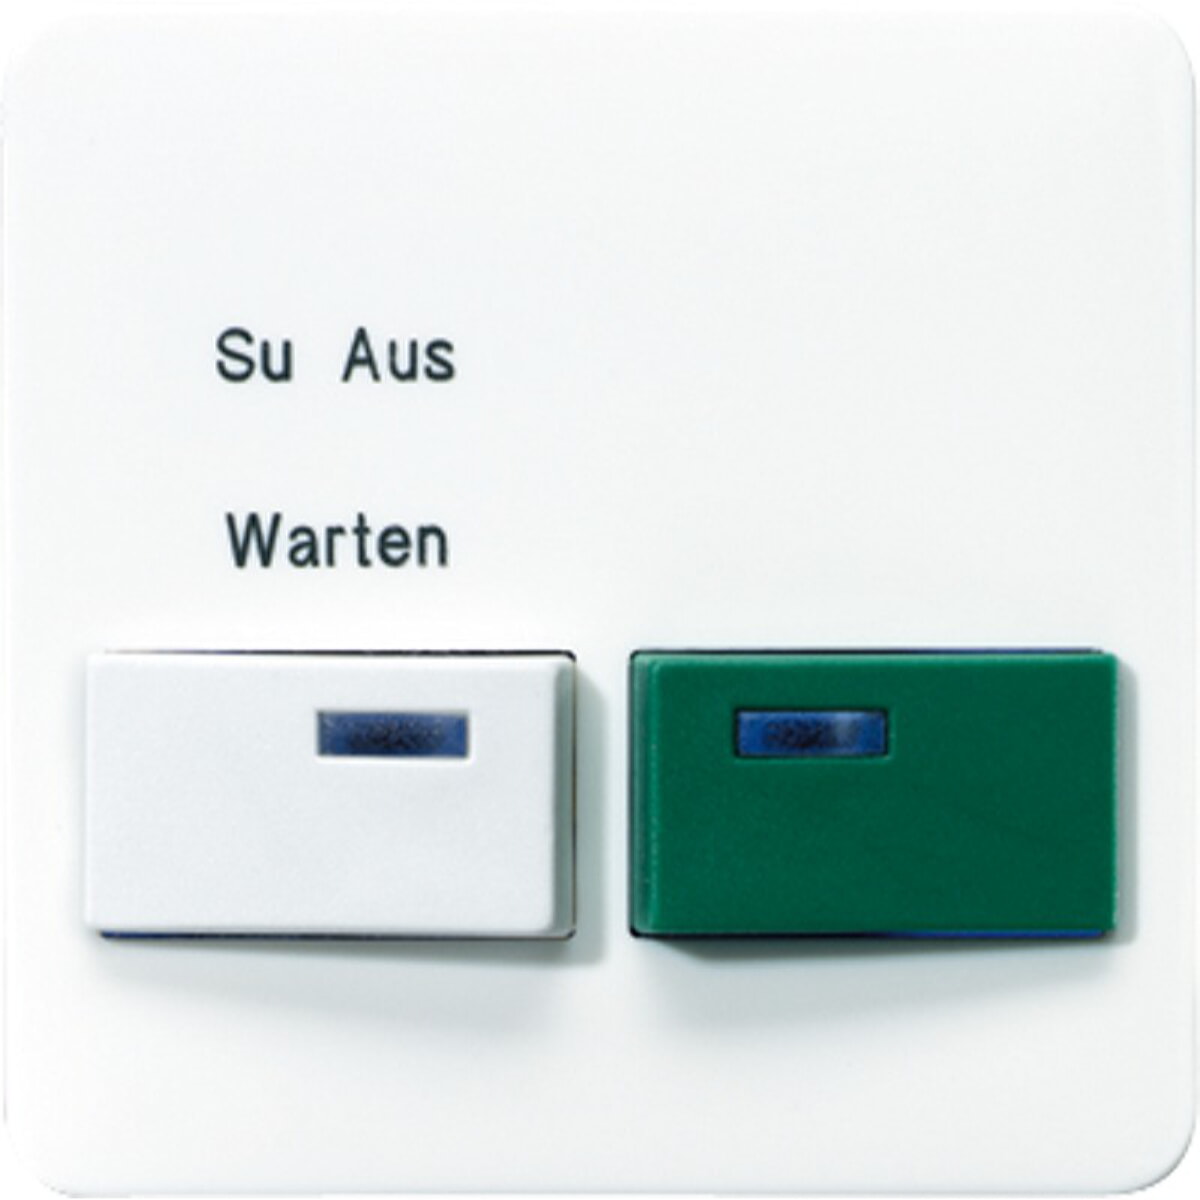 Jung Abdeckung für Ackermann, Typ 73642 B – Dienstzimmereinheit –, weiß, grün, Serie CD, alpinweiß CD642B-2WW